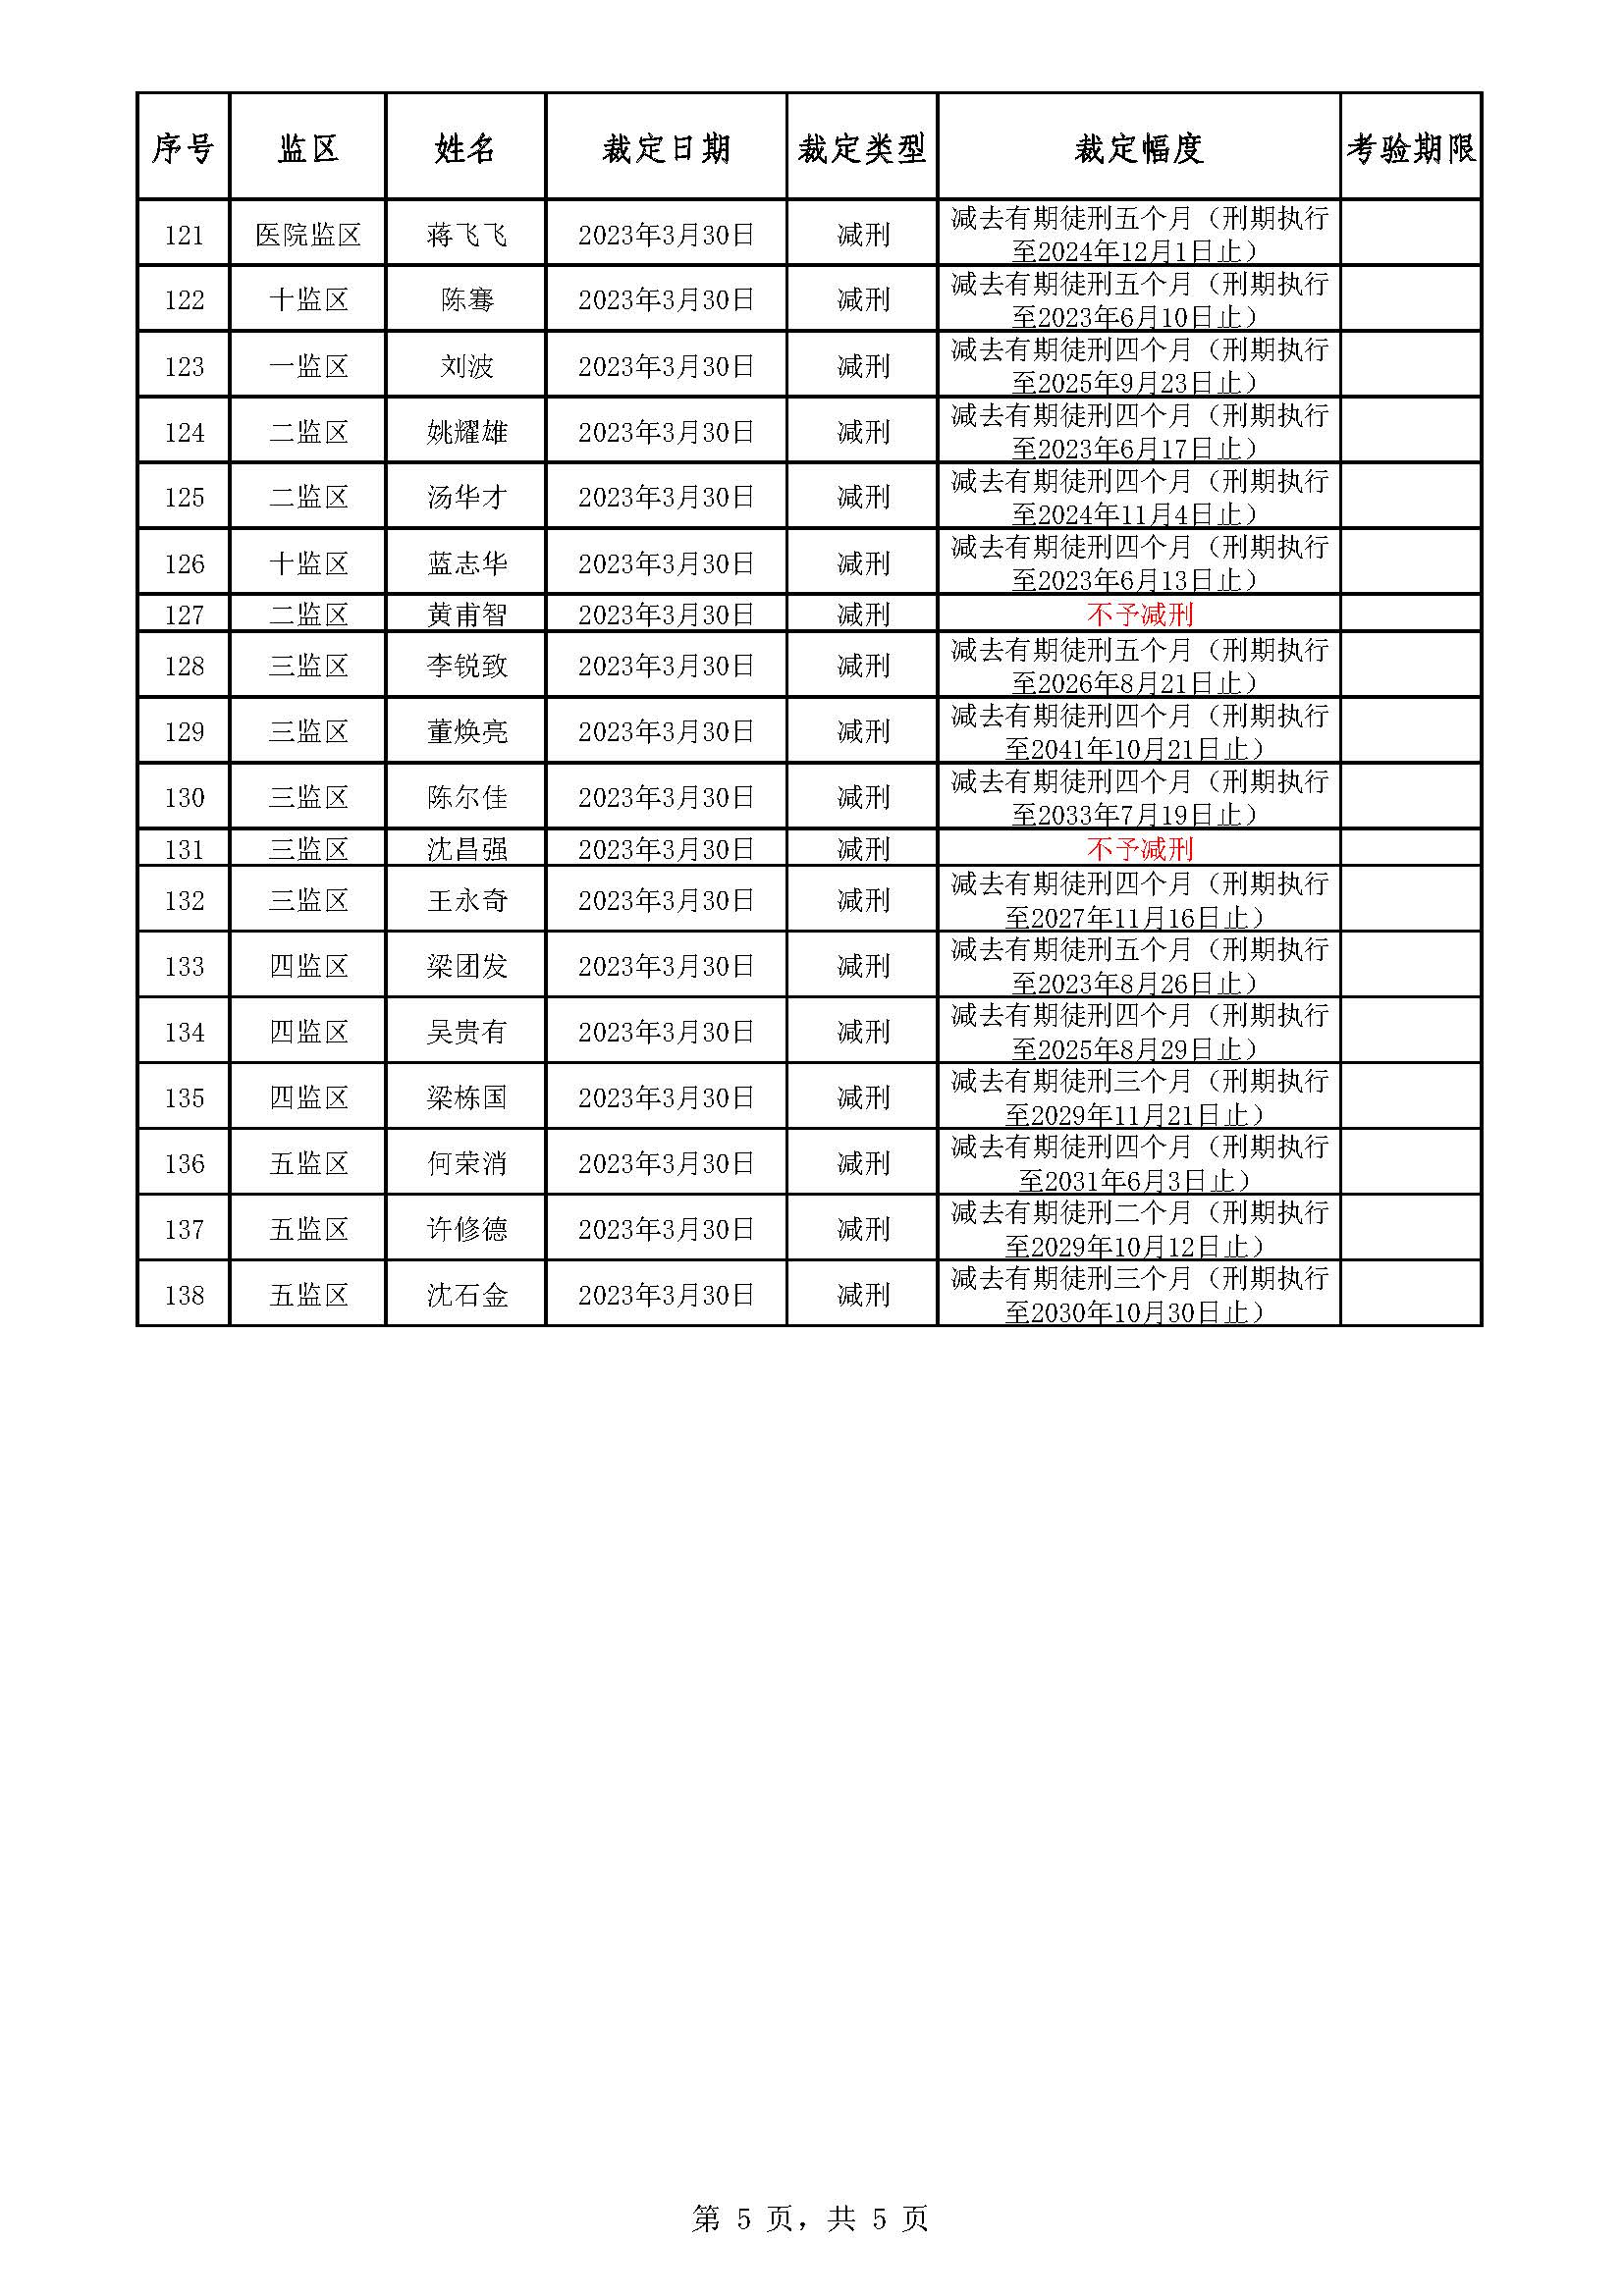 广东省明康监狱2022年第六批减刑假释裁定榜_页面_5.jpg